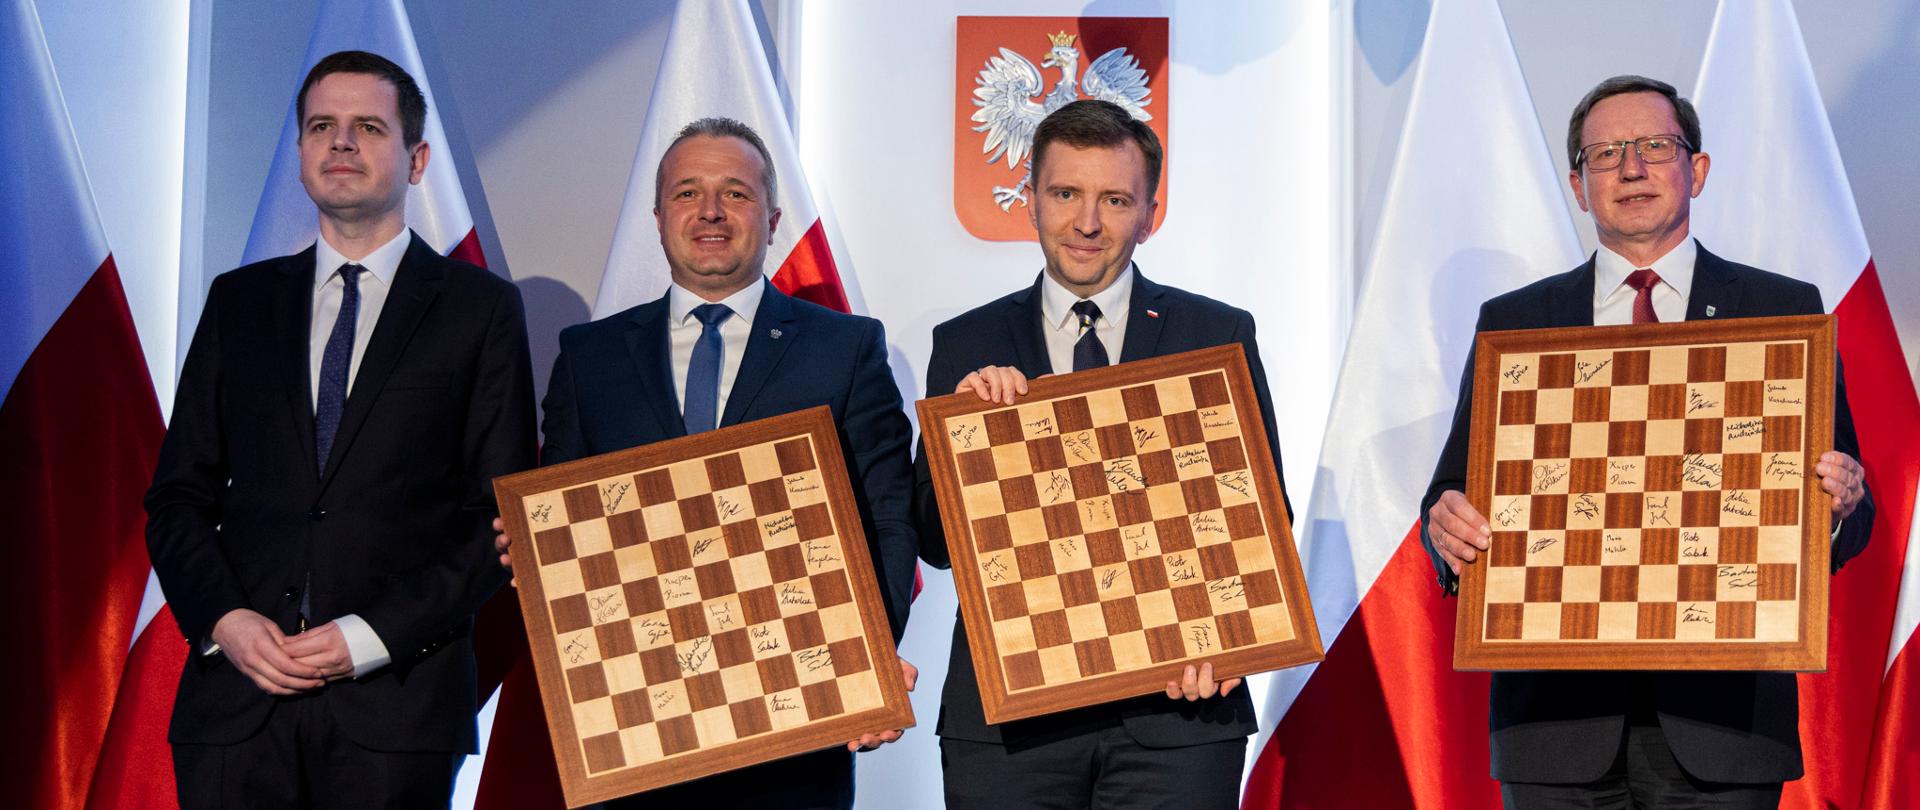 
4 osoby stojące z szachownicami w rękach na tle biało-czerwonych flag
